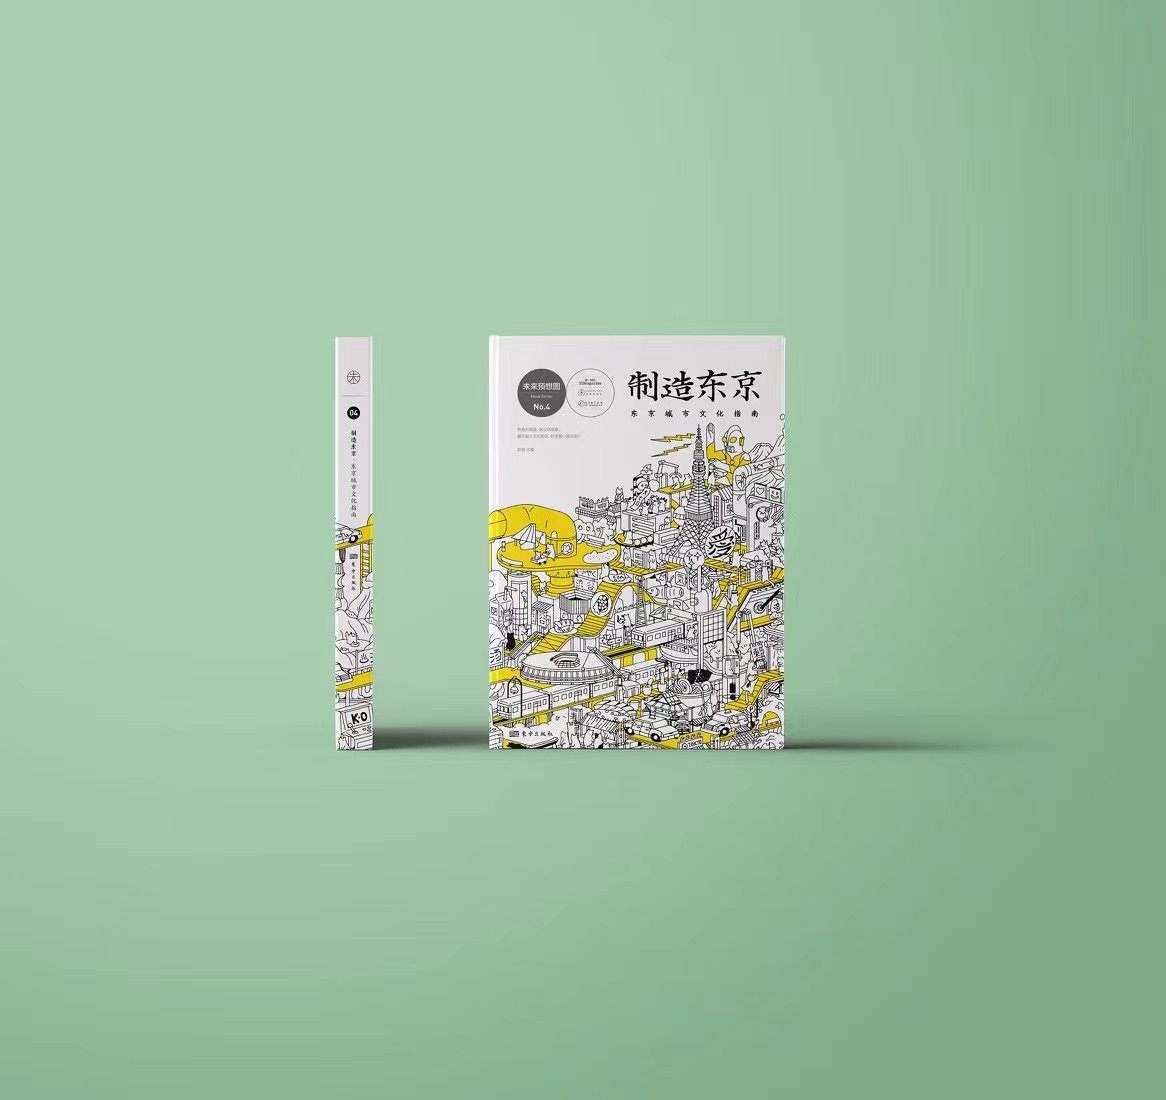 【纪念版套装】未来预想图《制造东京：东京城市文化指南》系列产品